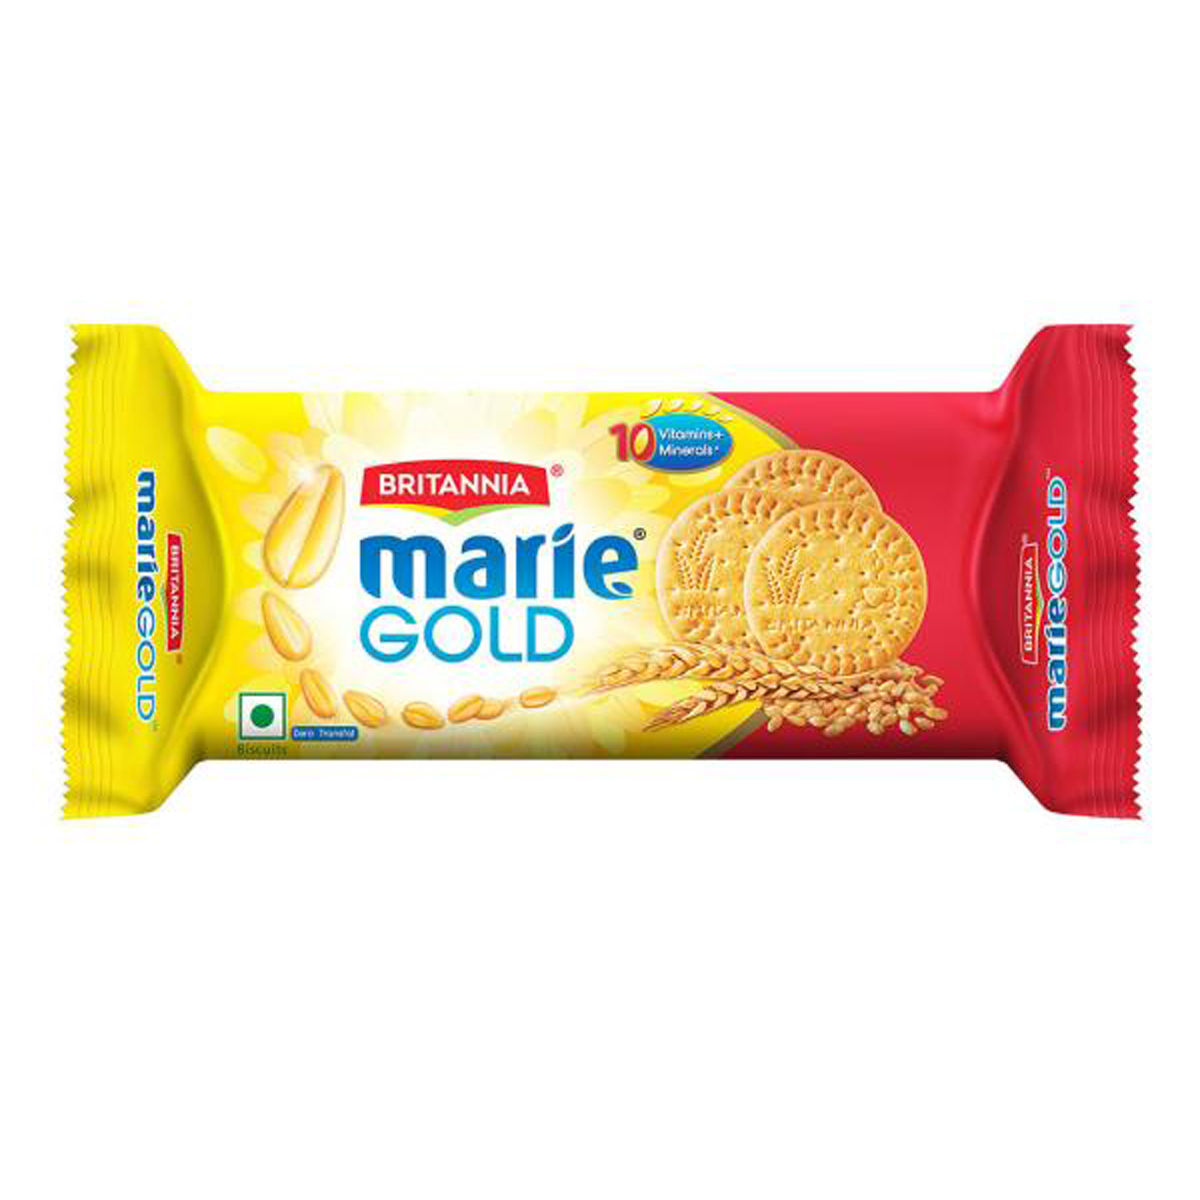 Britannia Marie Gold Biscuits, 120 gm, Pack of 1 